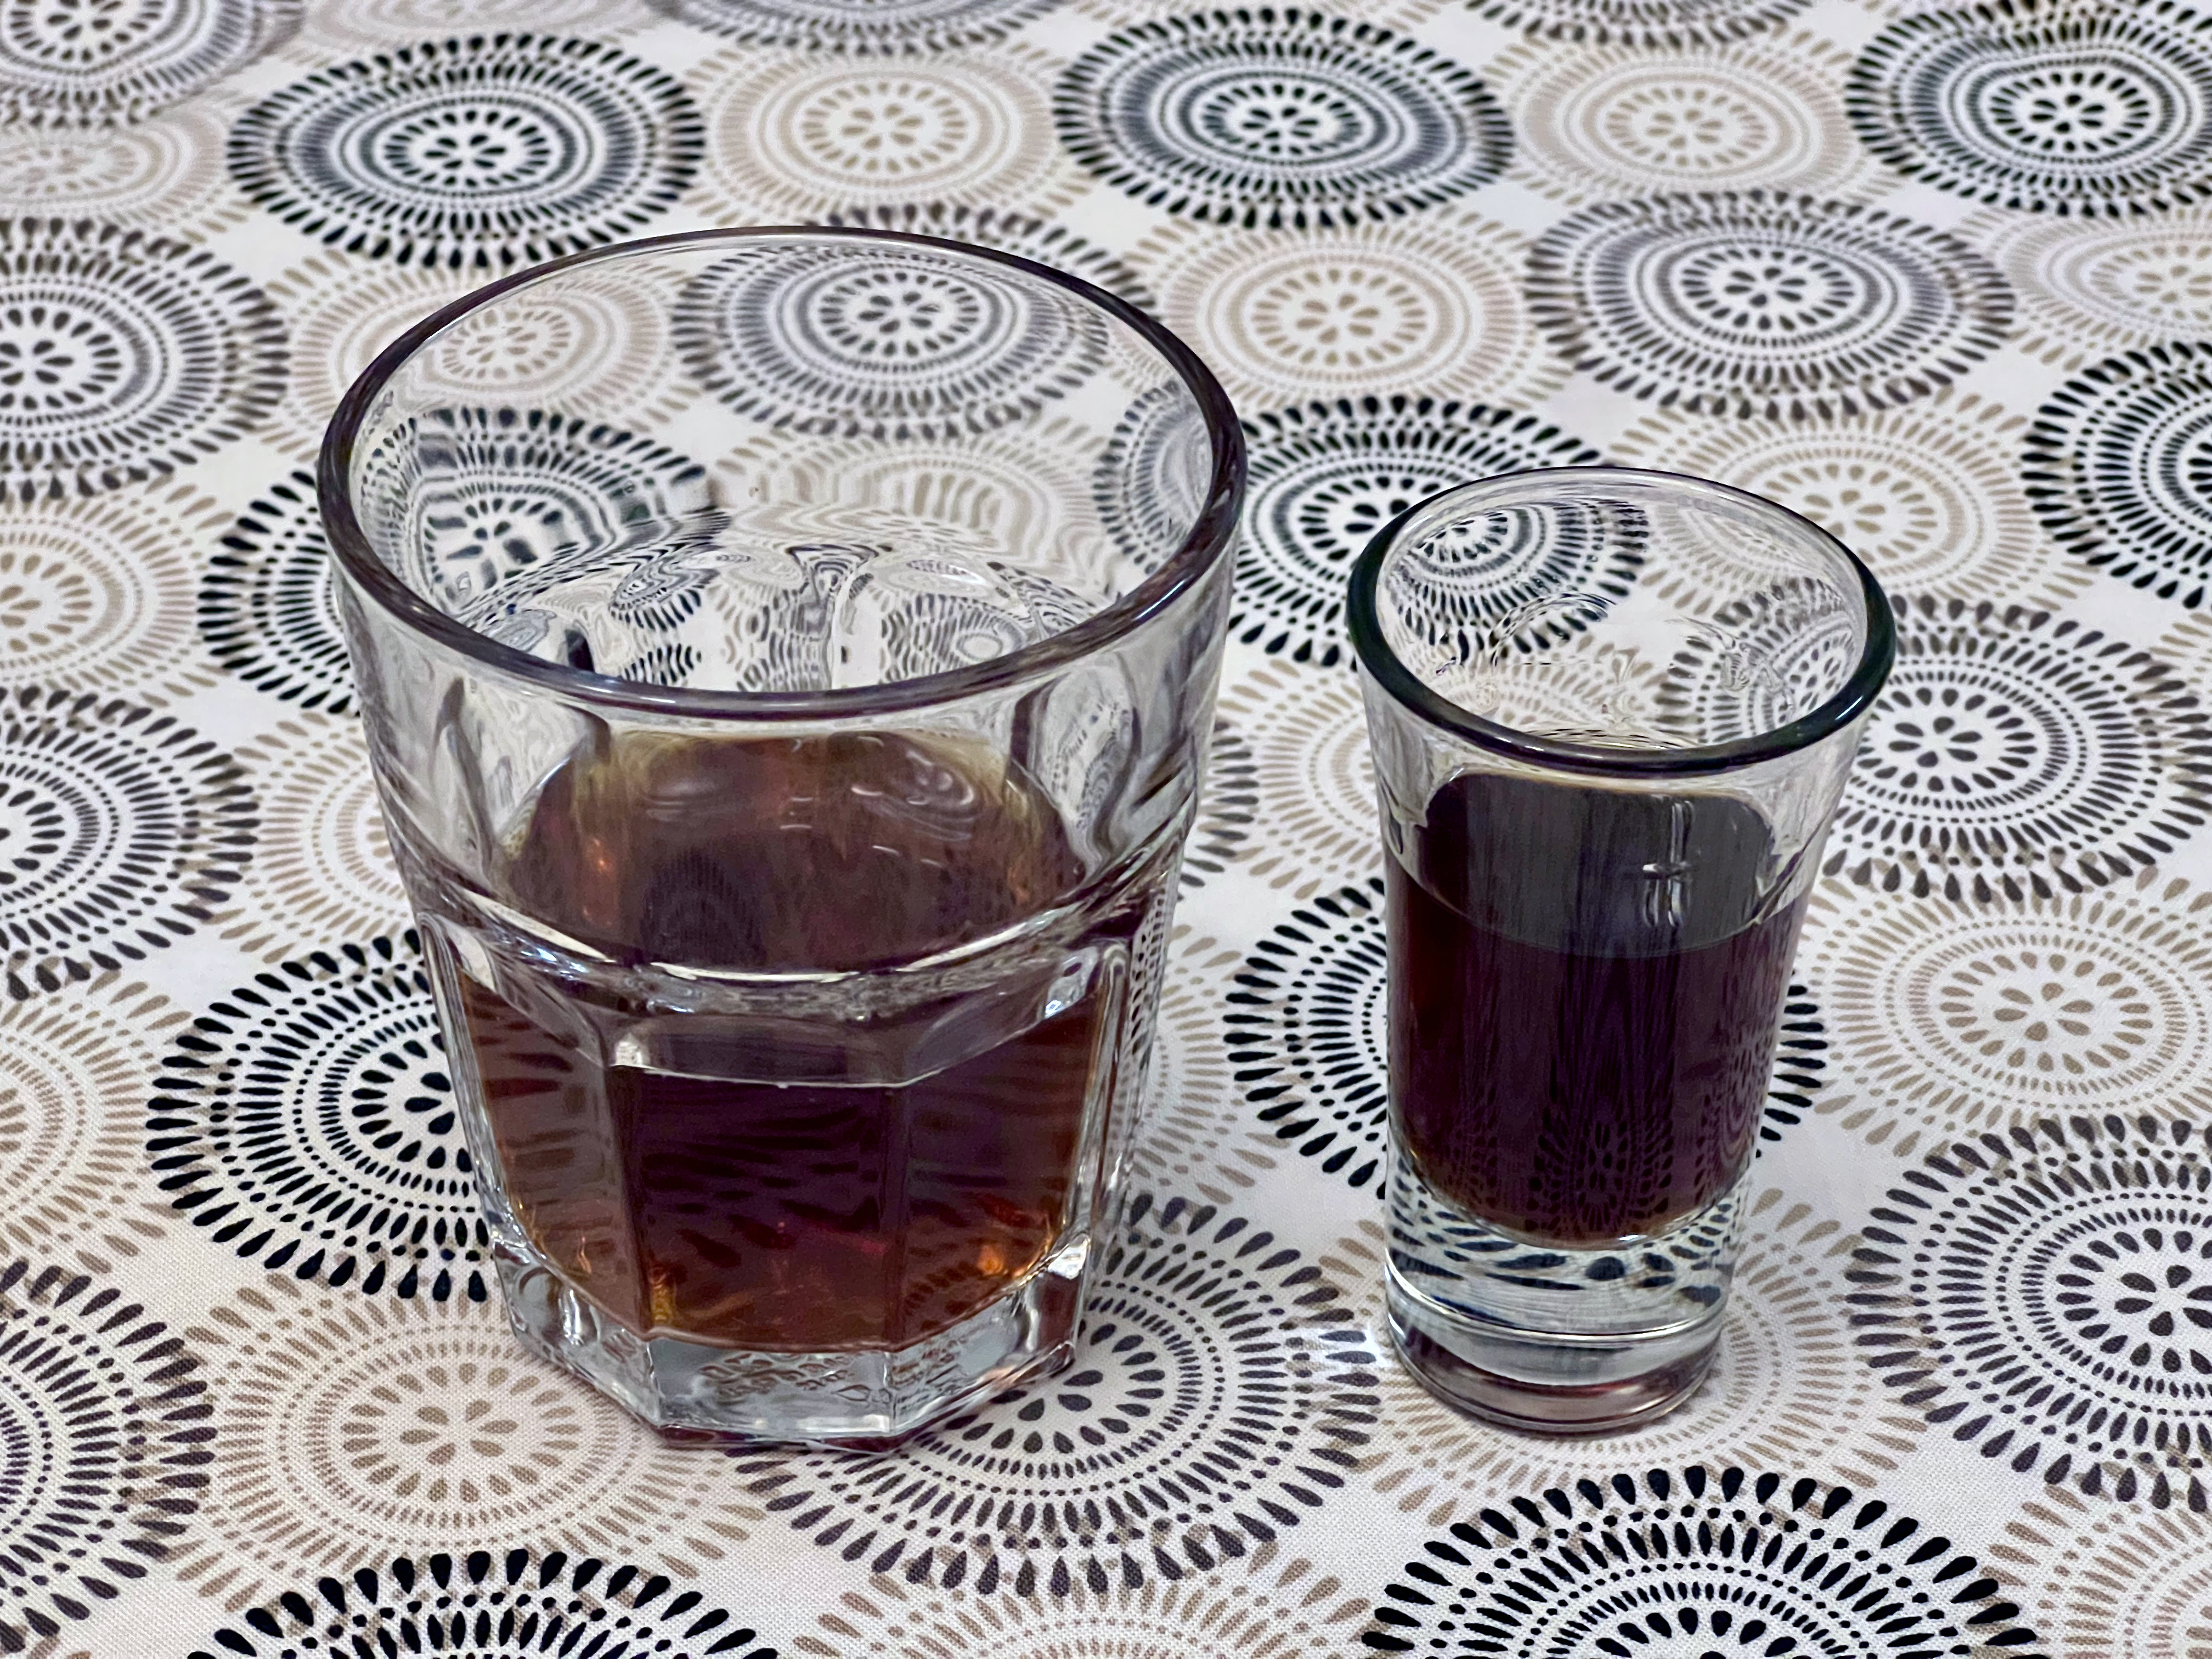 A shot glass of mahogany-colored liquid, next to a tumbler of a similar liquid.